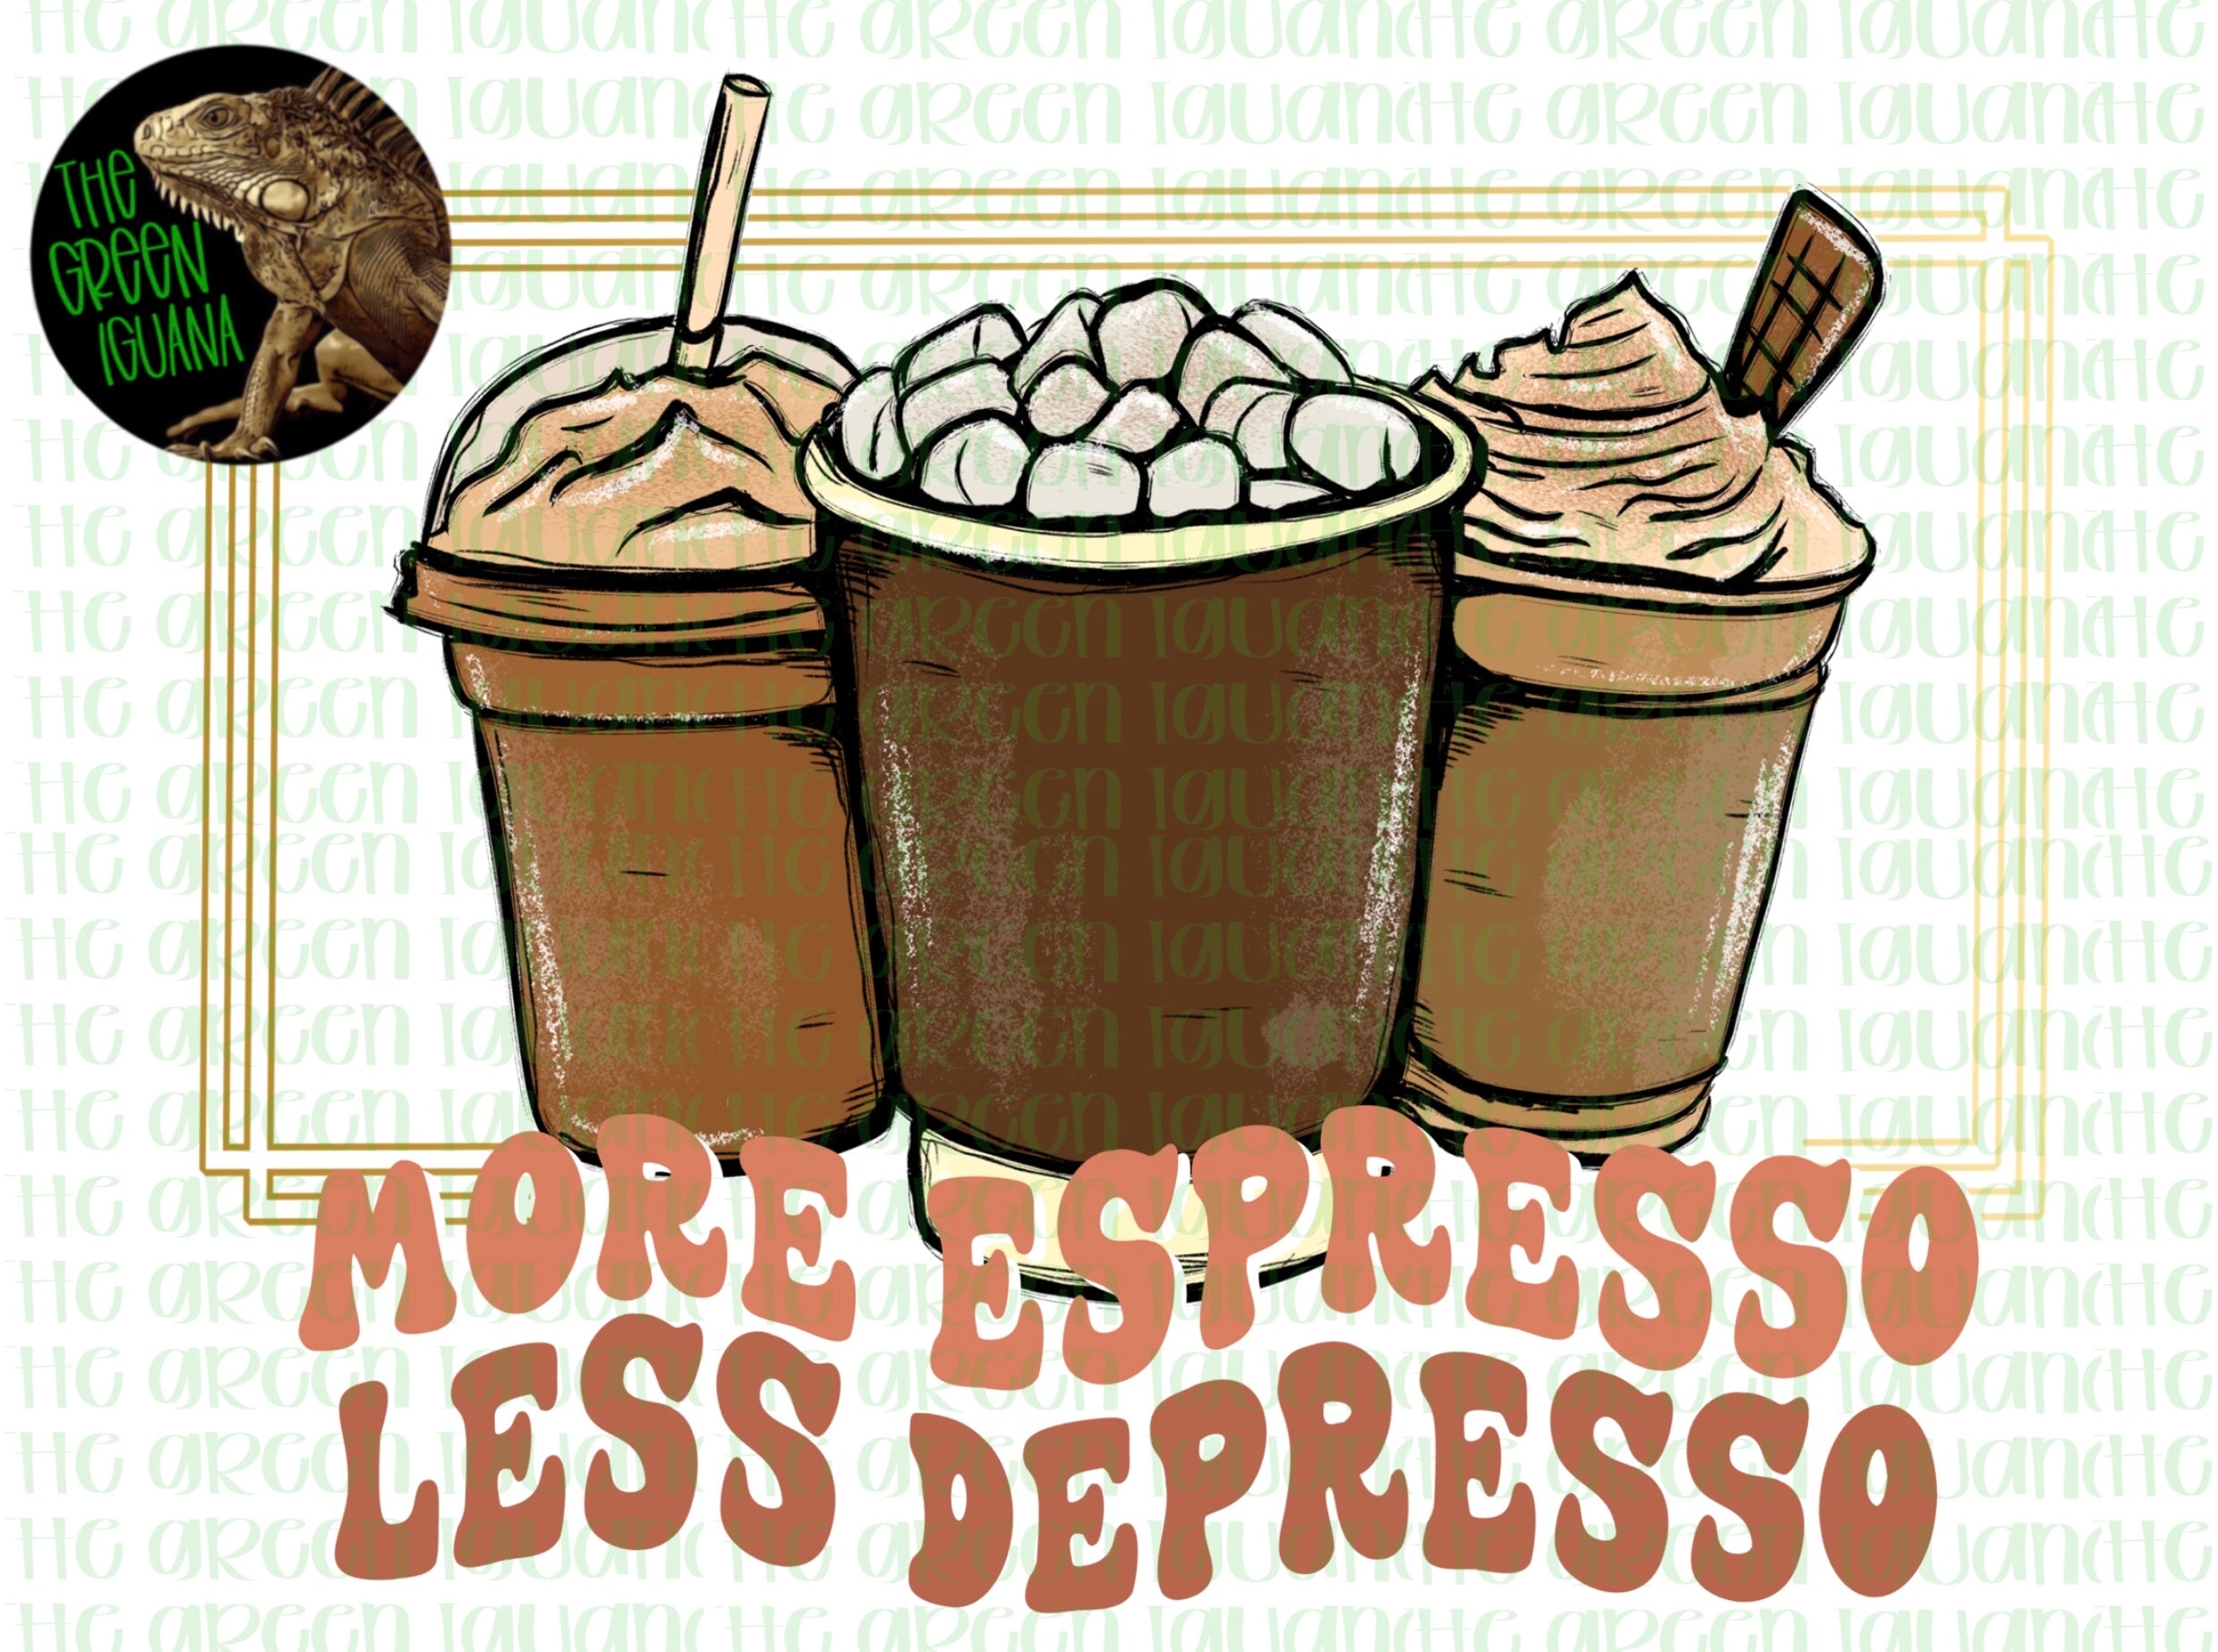 More espresso, less depresso - DIGITAL